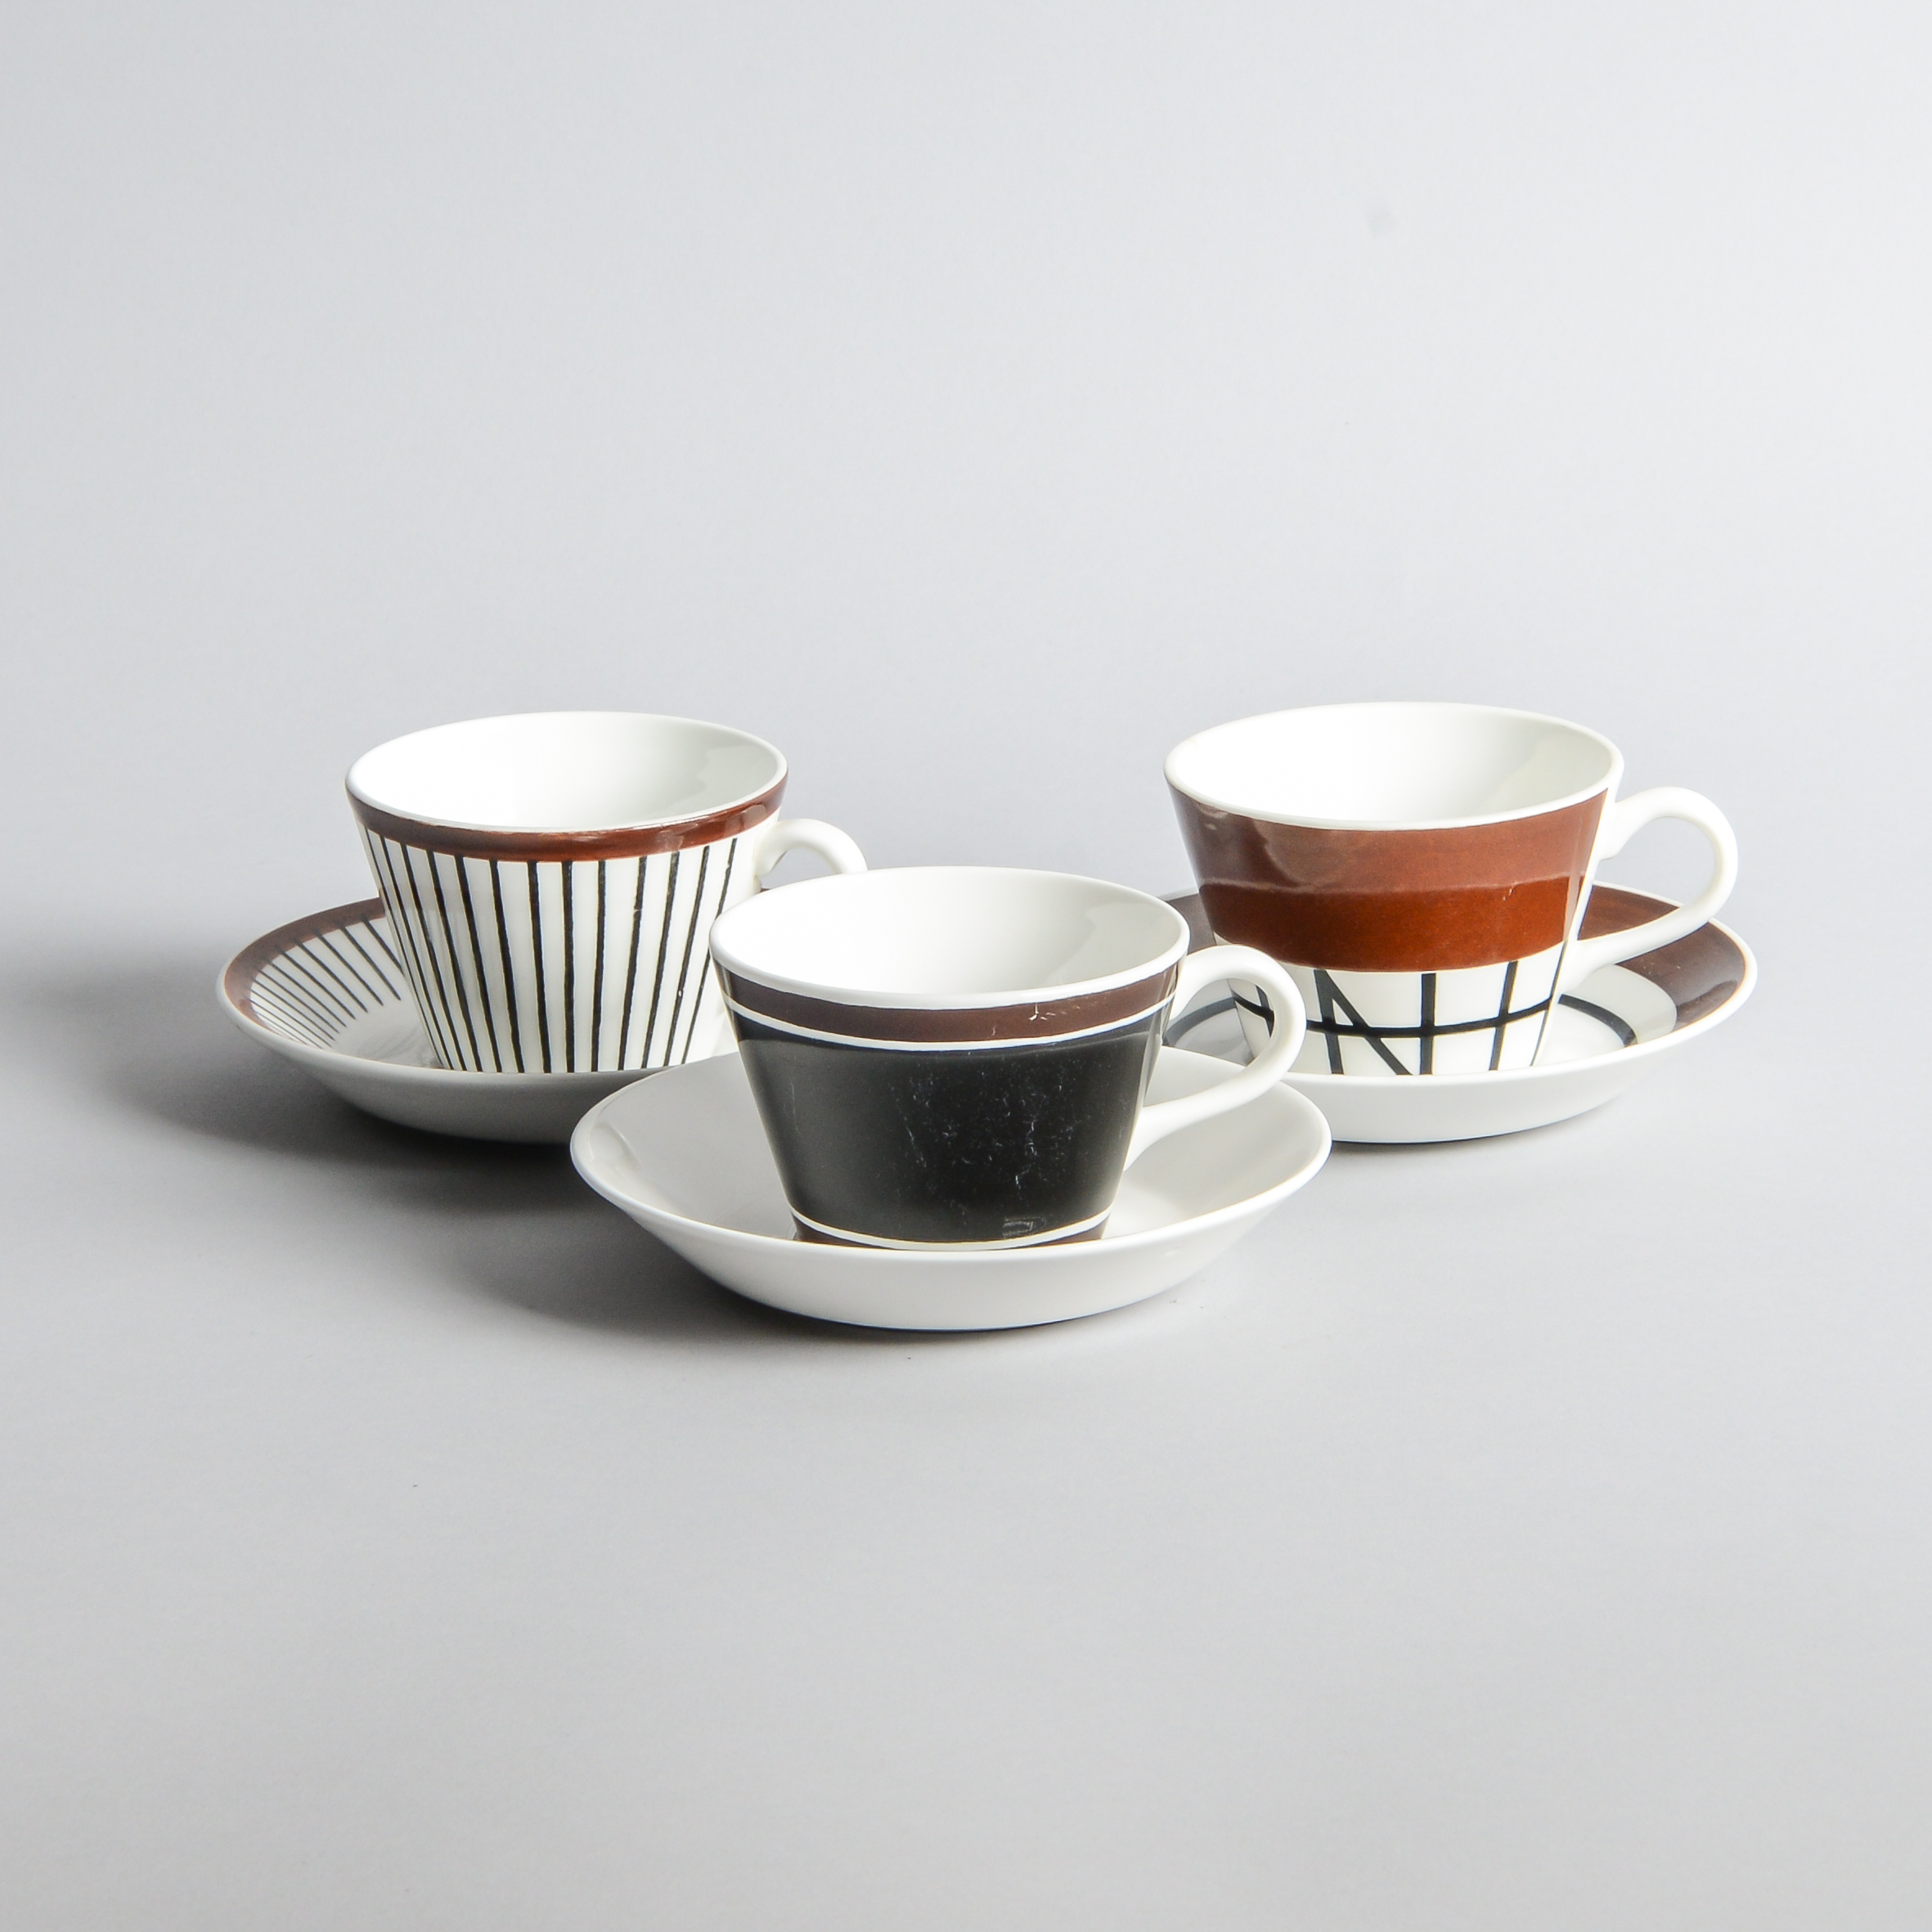 Gustavsberg – Kaffekoppar ”Terra” ”Spisa Ribb” och ”Korsvirke”